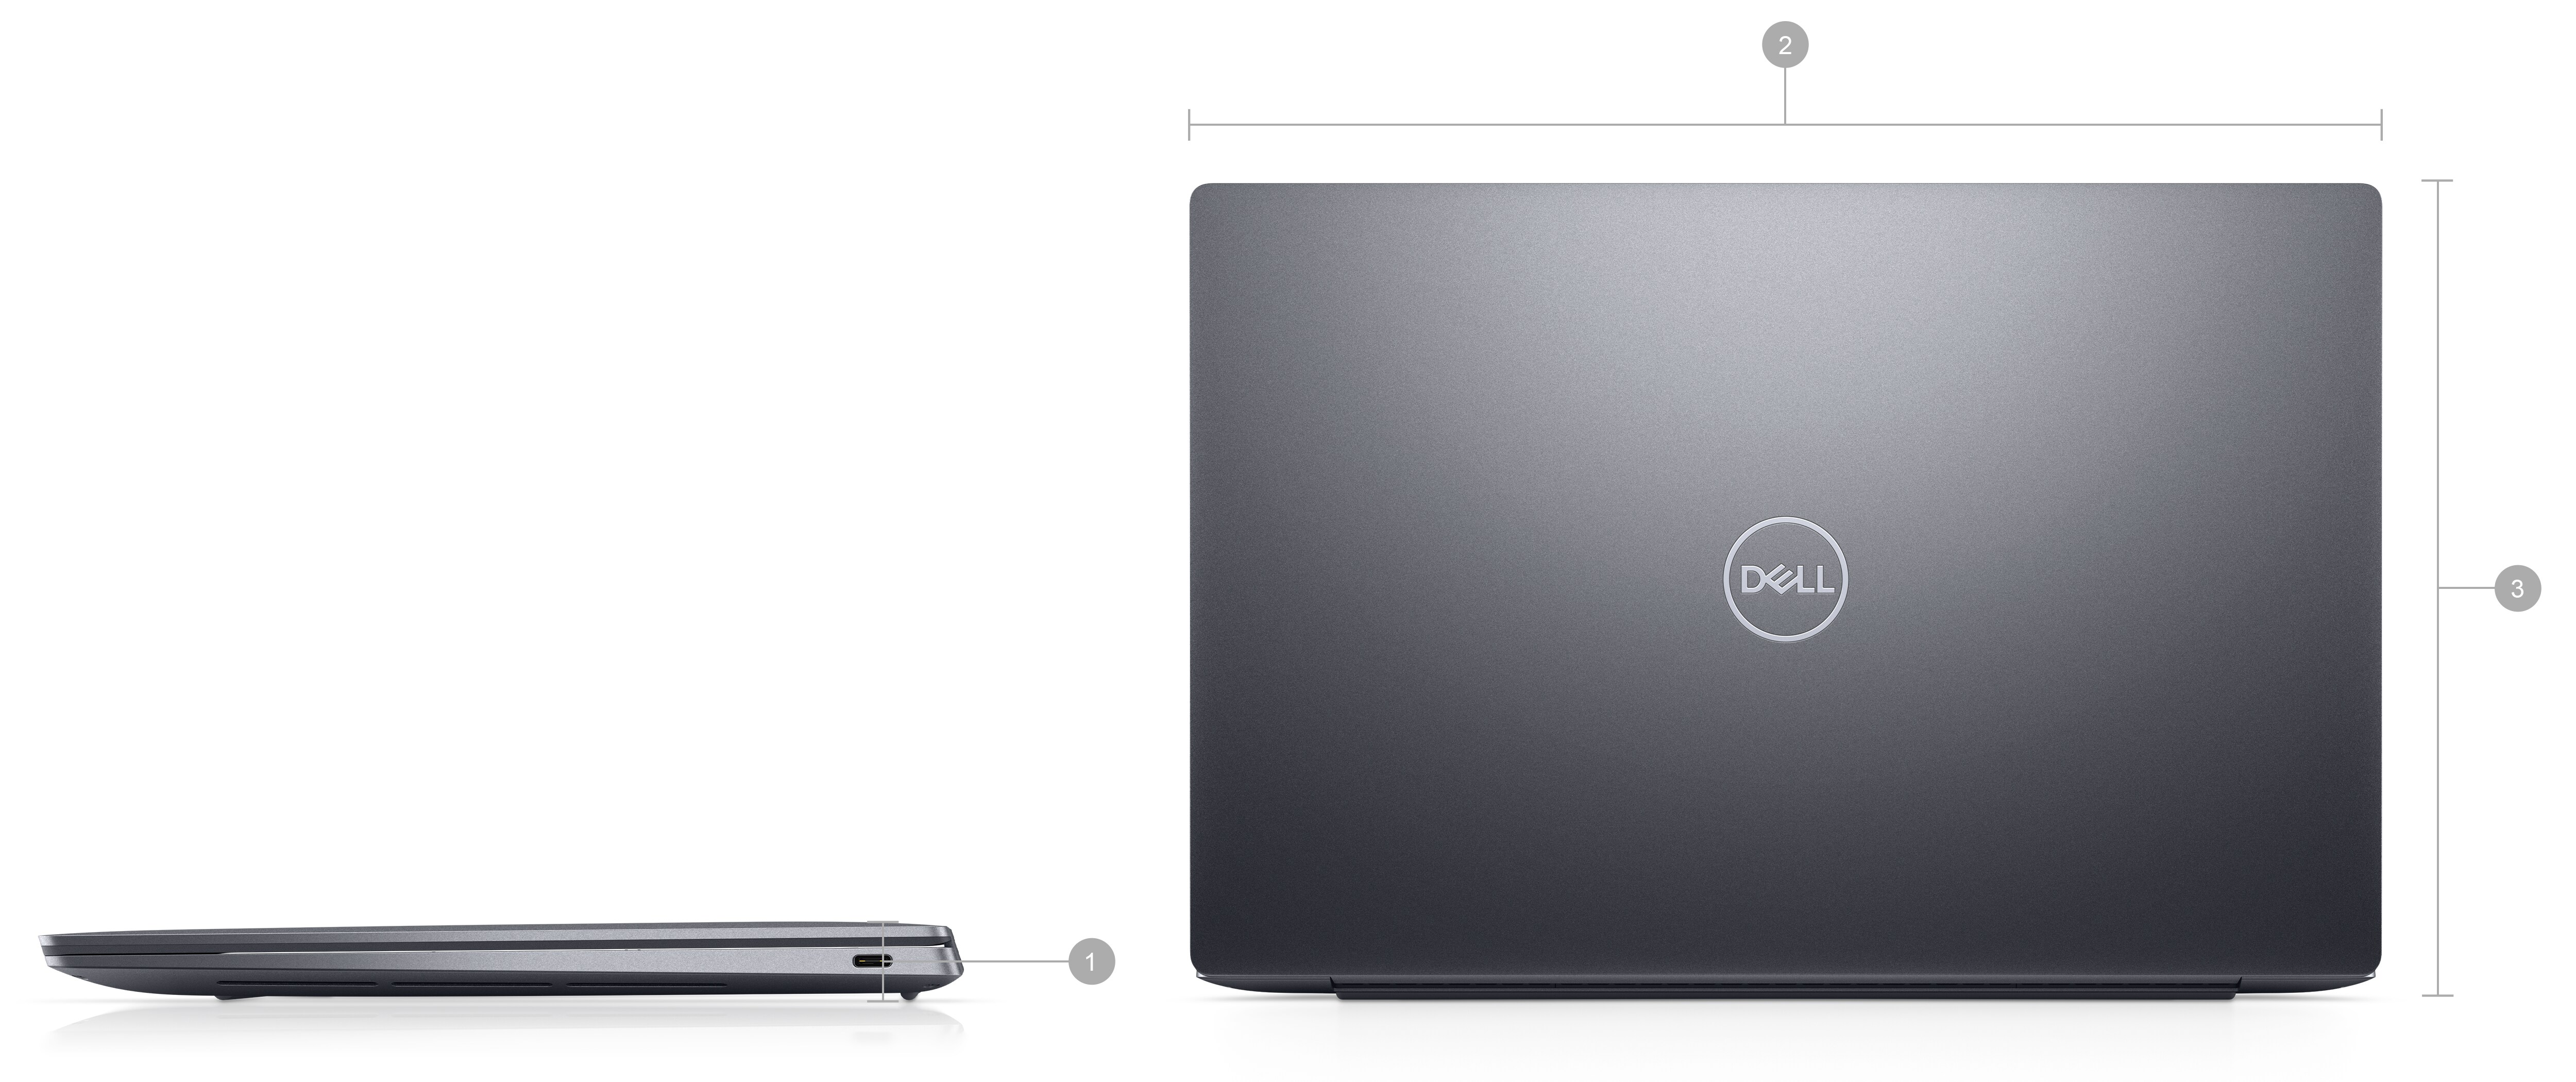 Imagem de notebooks Dell XPS 13 9320 com os números de 1 a 3 indicando as dimensões e o peso do produto.